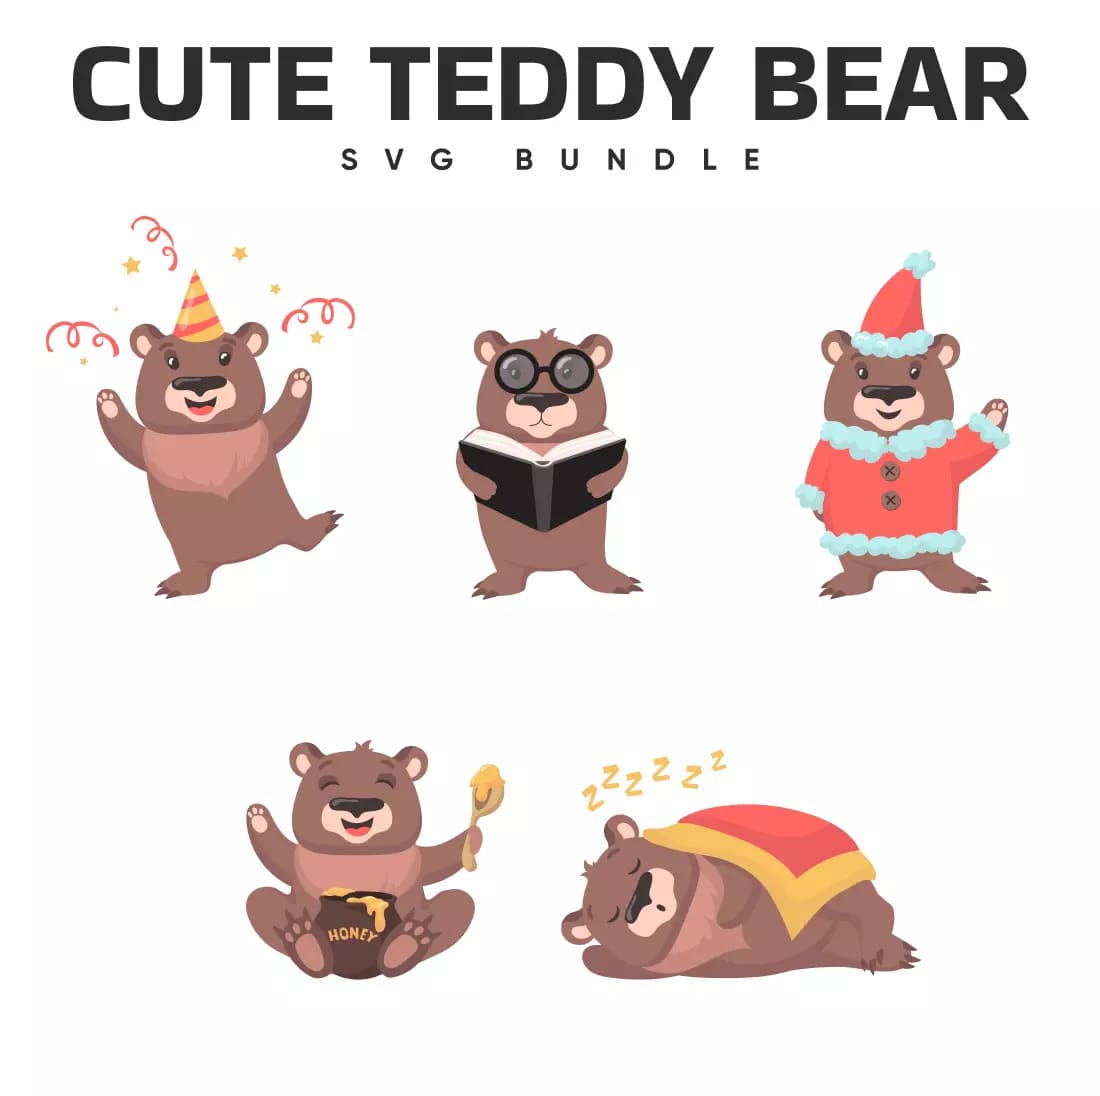 Cute teddy bear svg bundle.